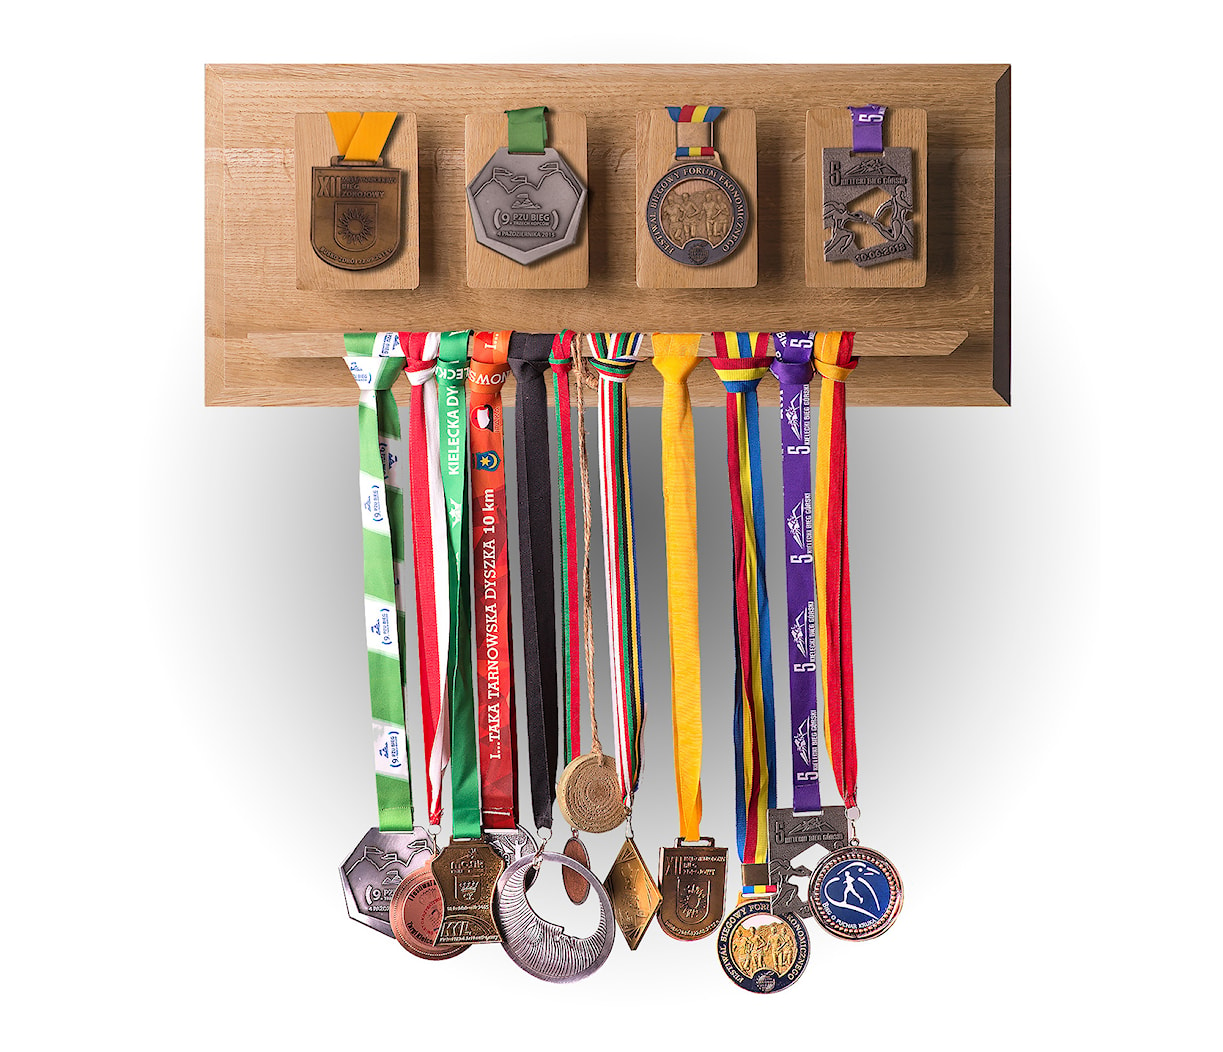 Wieszak na medale, ekspozycja medali. - Salon, styl tradycyjny - zdjęcie od GregSarna - Homebook